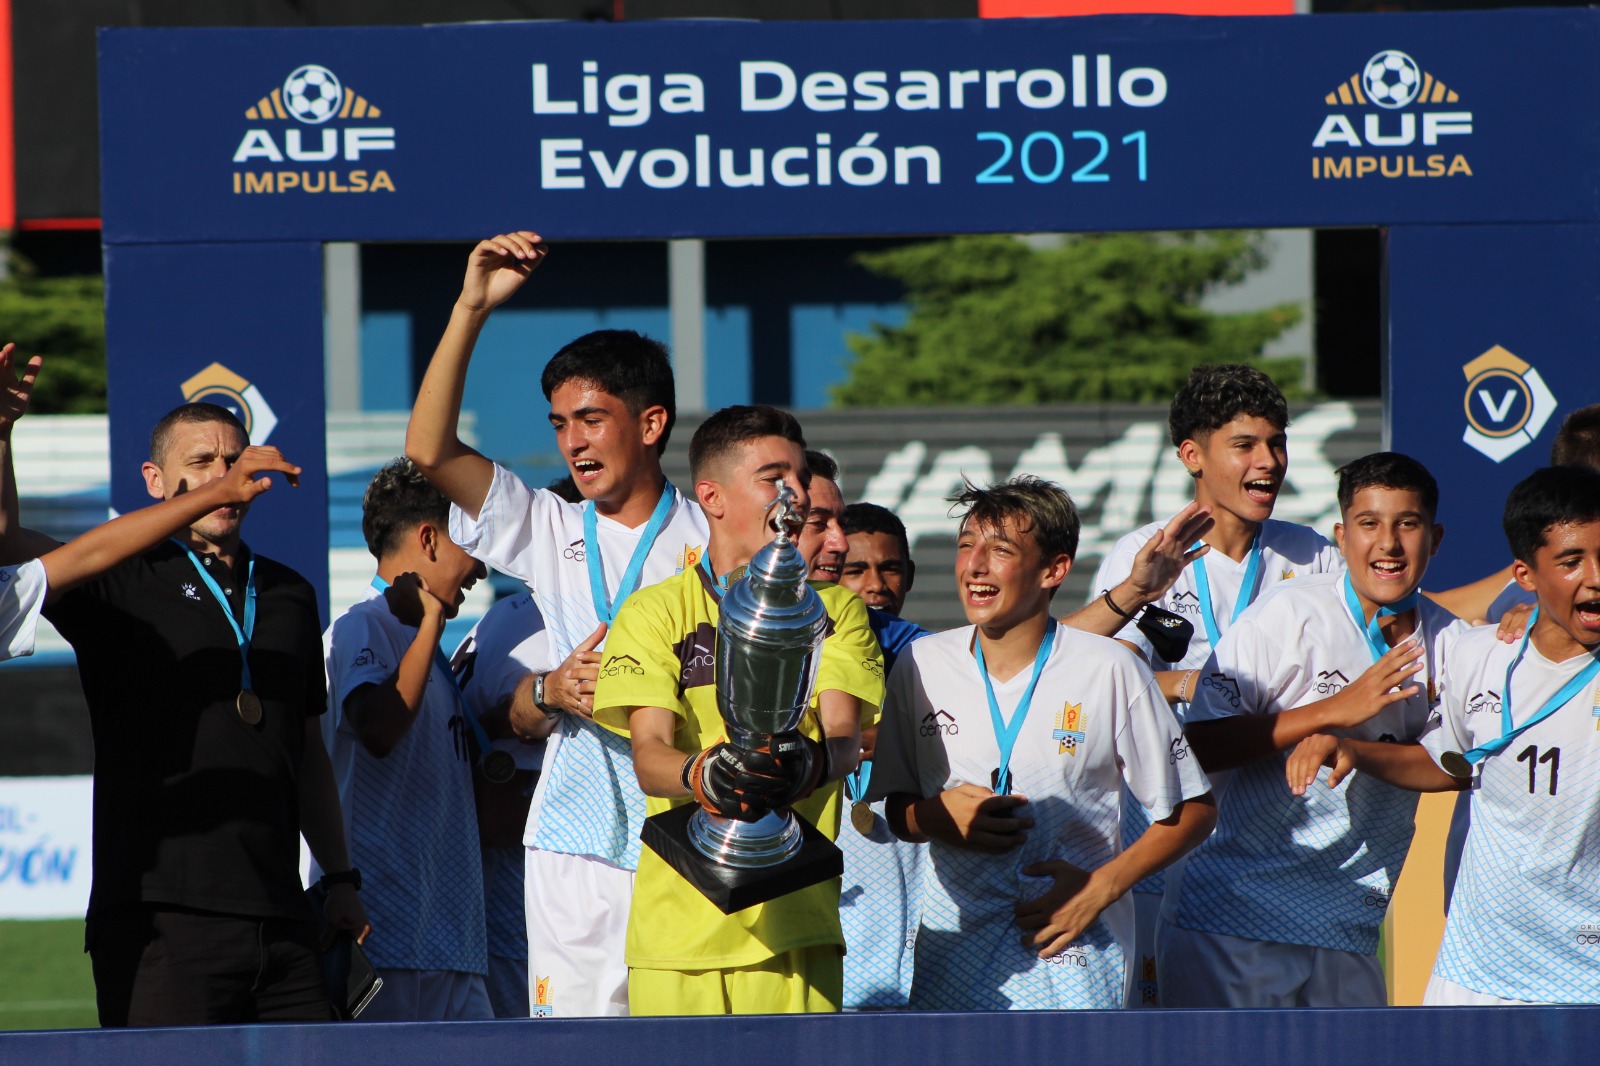 Uruguay y Paraguay festejan en la CONMEBOL Liga Evolución de